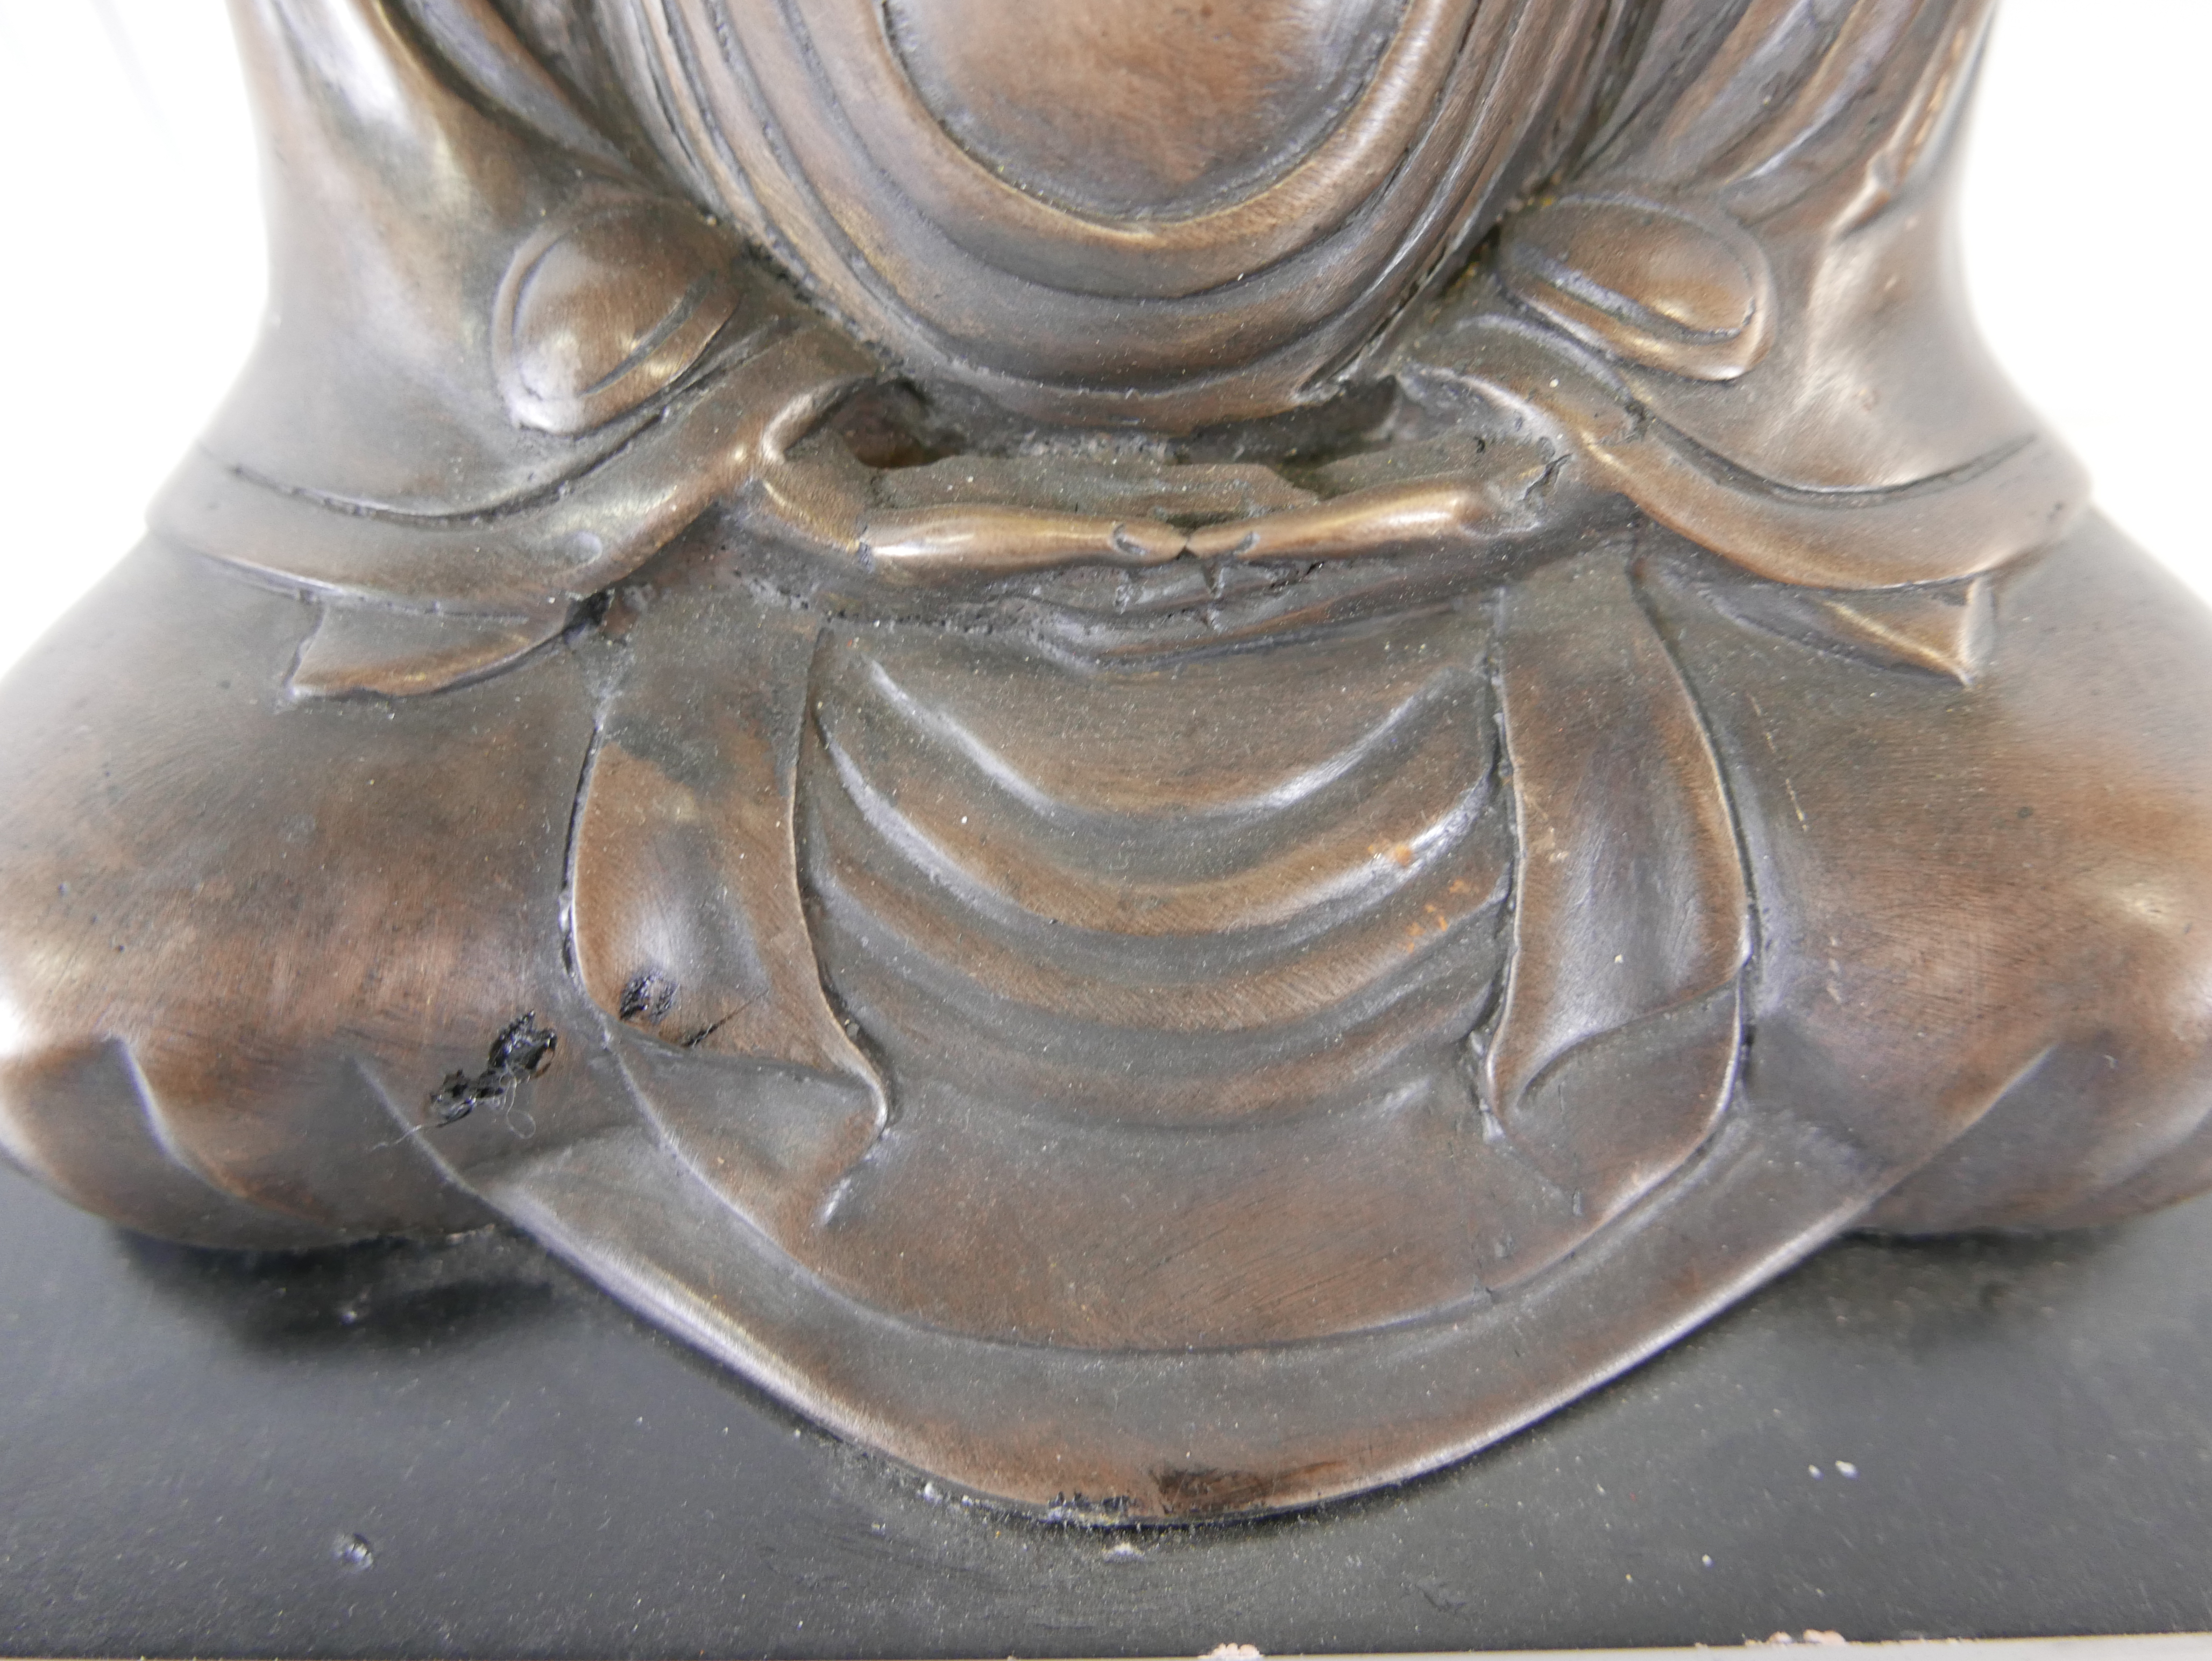 Bronzen beeld op marmeren voet "Boeddha" 20 cm hoog    